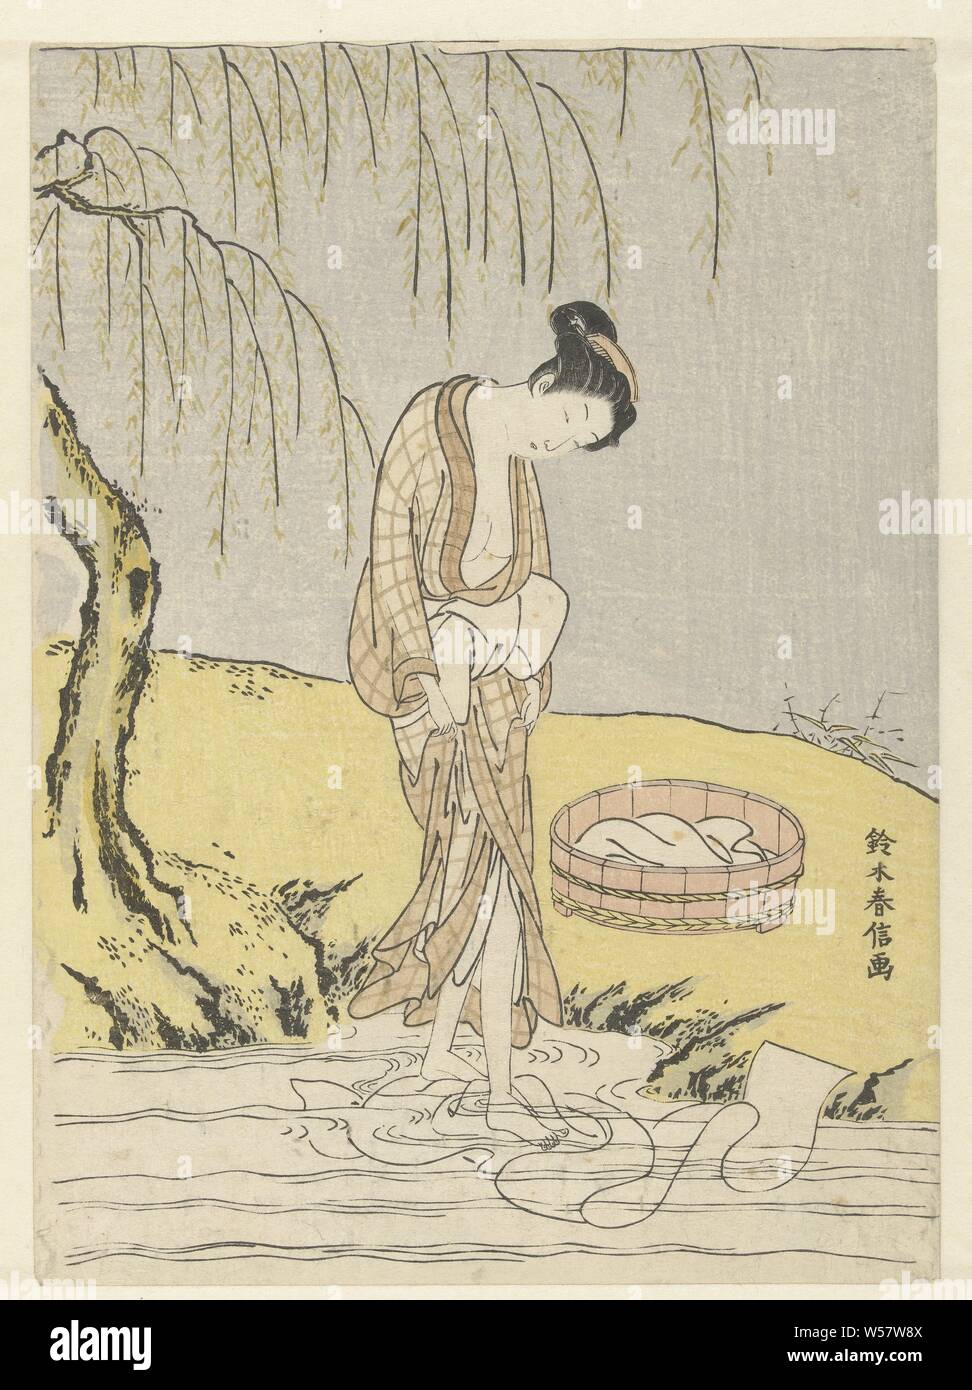 Waschen Tuch Frau, Frau in luftigen Kimono, in seichten Fluss stehend, Wäsche waschen mit Füßen, am Ufer eine Wanne mit Wäscherei und eine trauerweide., Suzuki Harunobu (auf Objekt erwähnt), Japan, 1765-1770, Papier, Farbholzschnitt, H 274 mm x B 200 mm Stockfoto